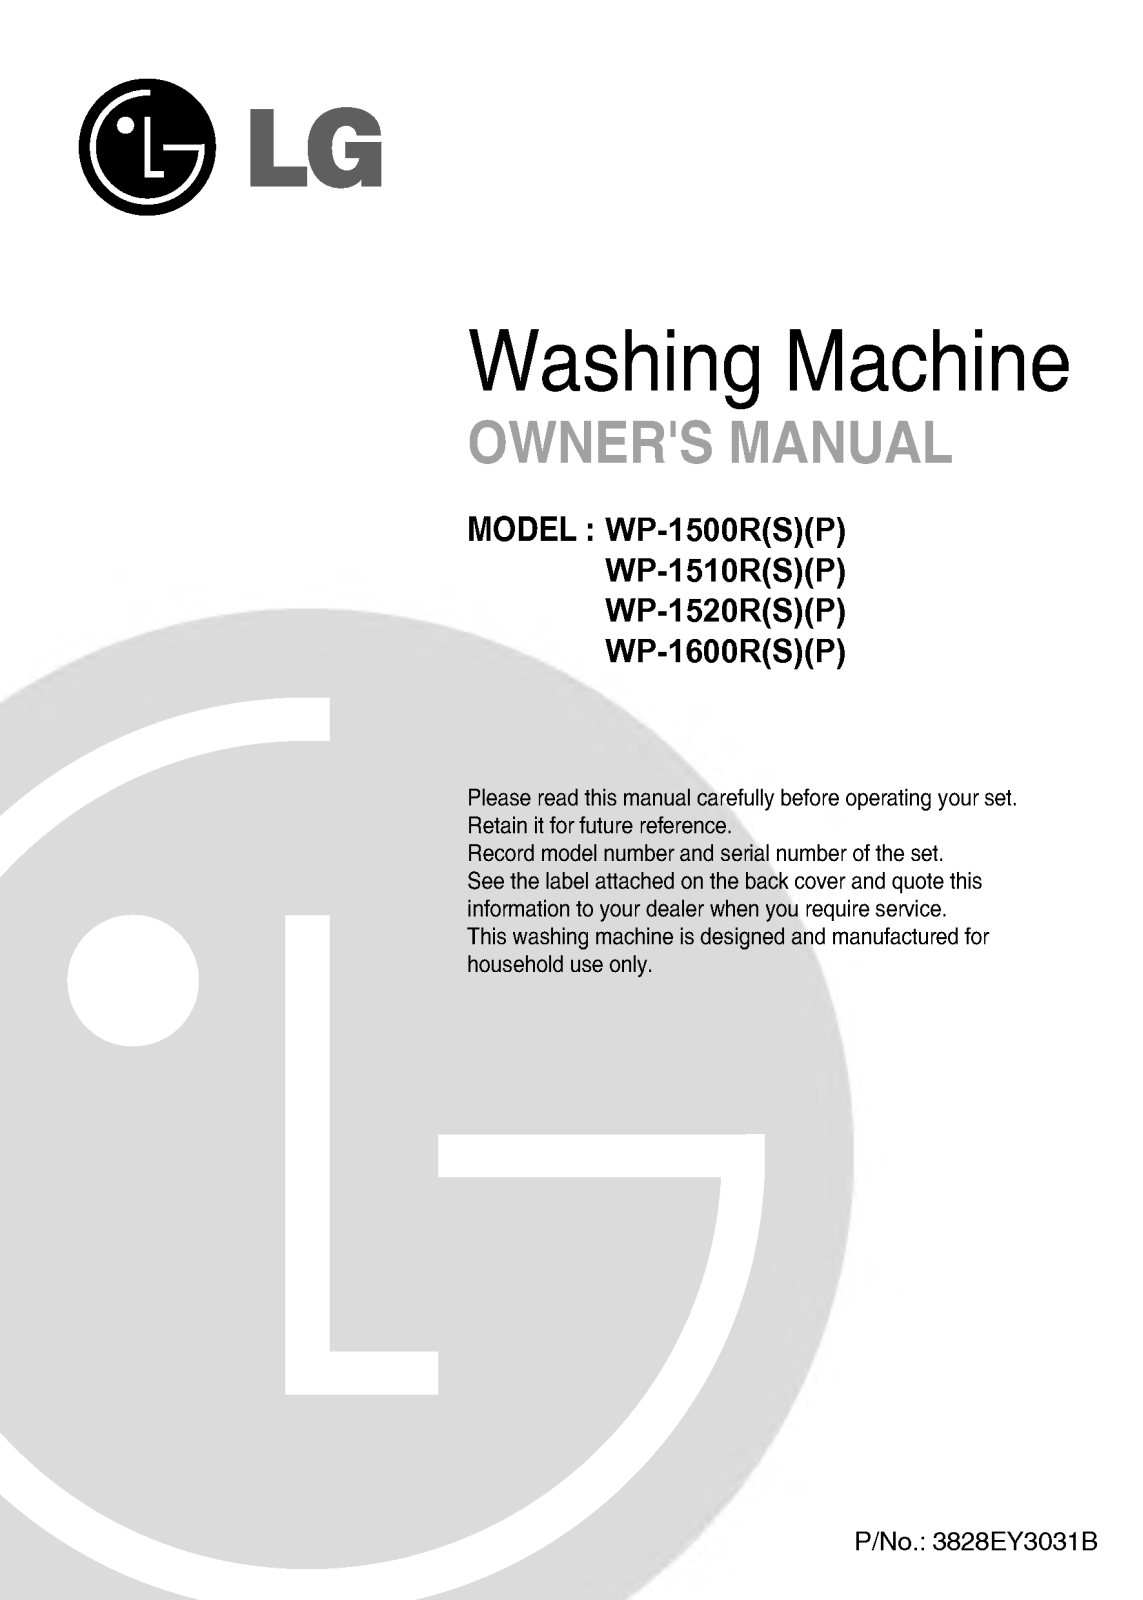 LG WP-1500R, WP-1510R, WP-1600R, WP-1520R User Manual